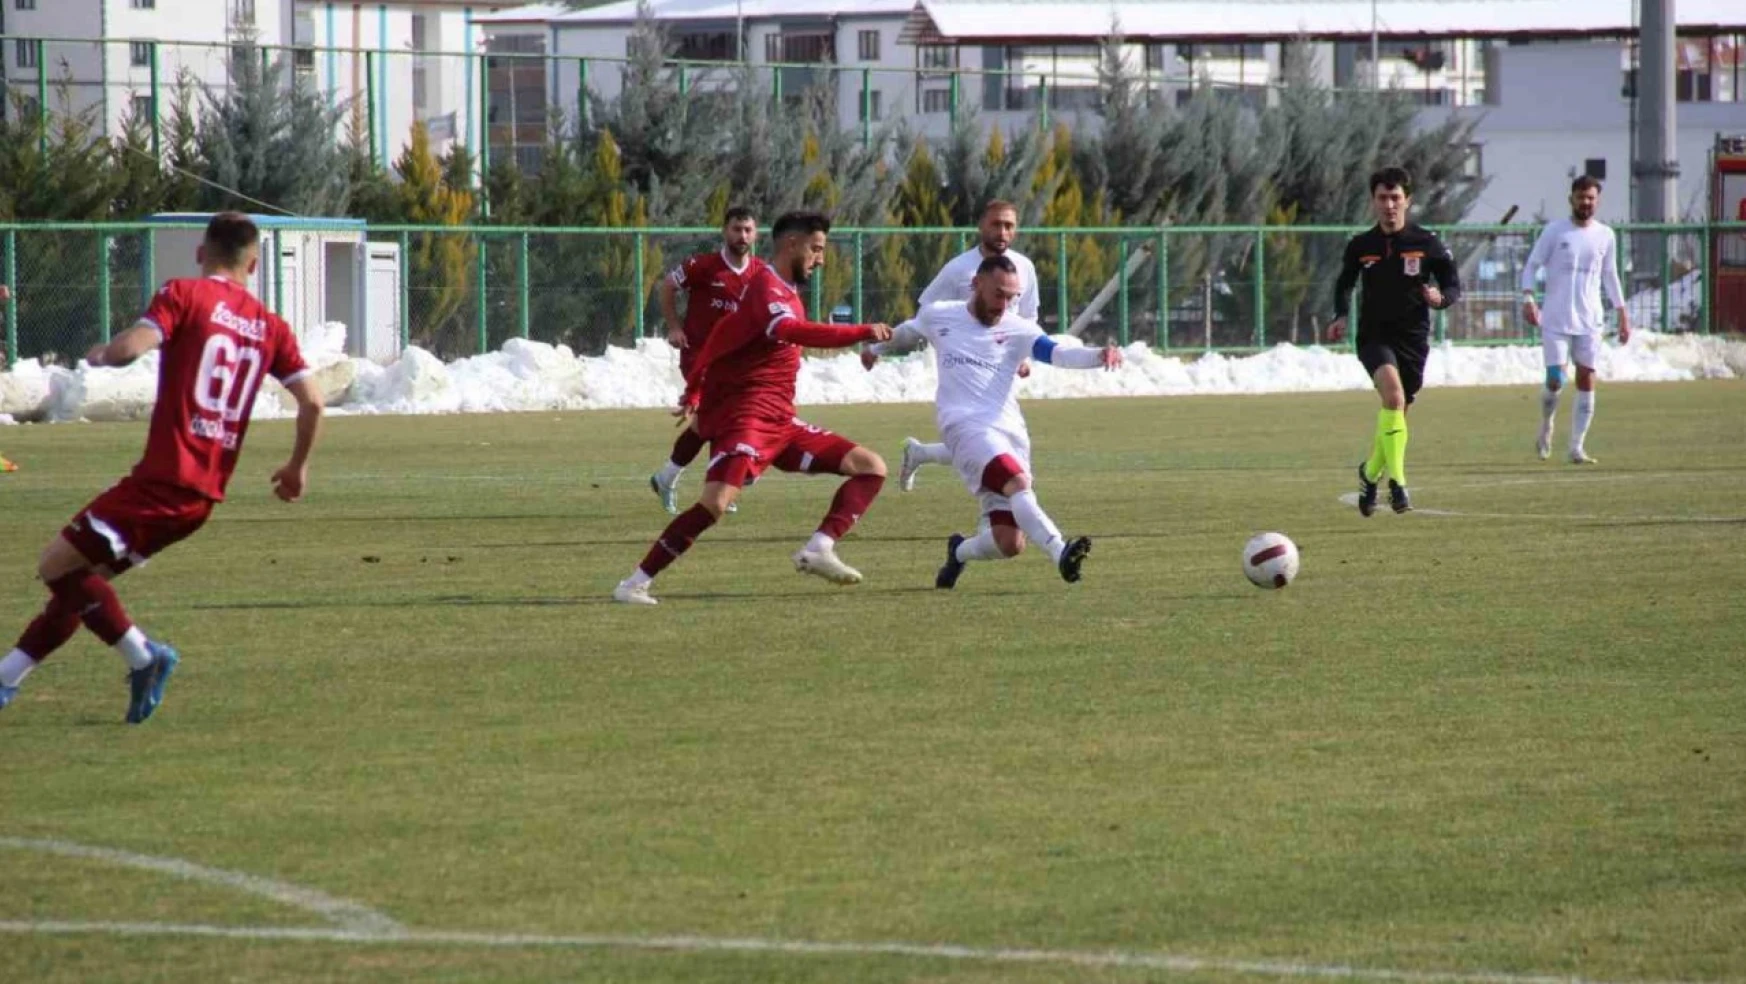 TFF 3. Lig: 23 Elazığ FK: 3 - Tokat Belediye Plevnespor: 2